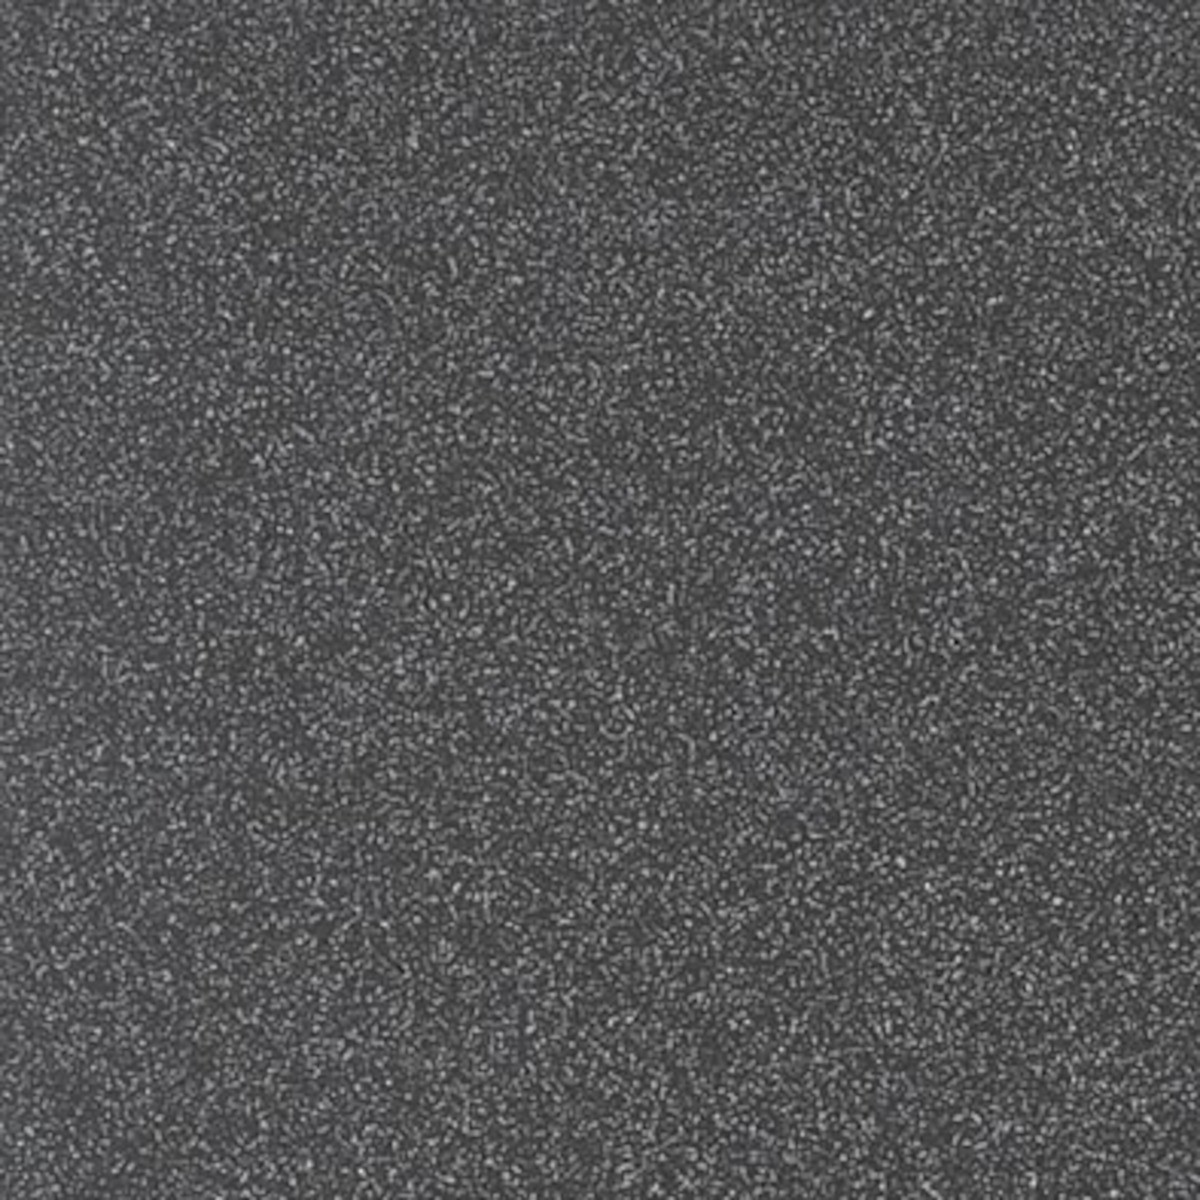 Dlažba Rako Taurus Granit Rio negro 30x30 cm mat TAA35069.1 Rako